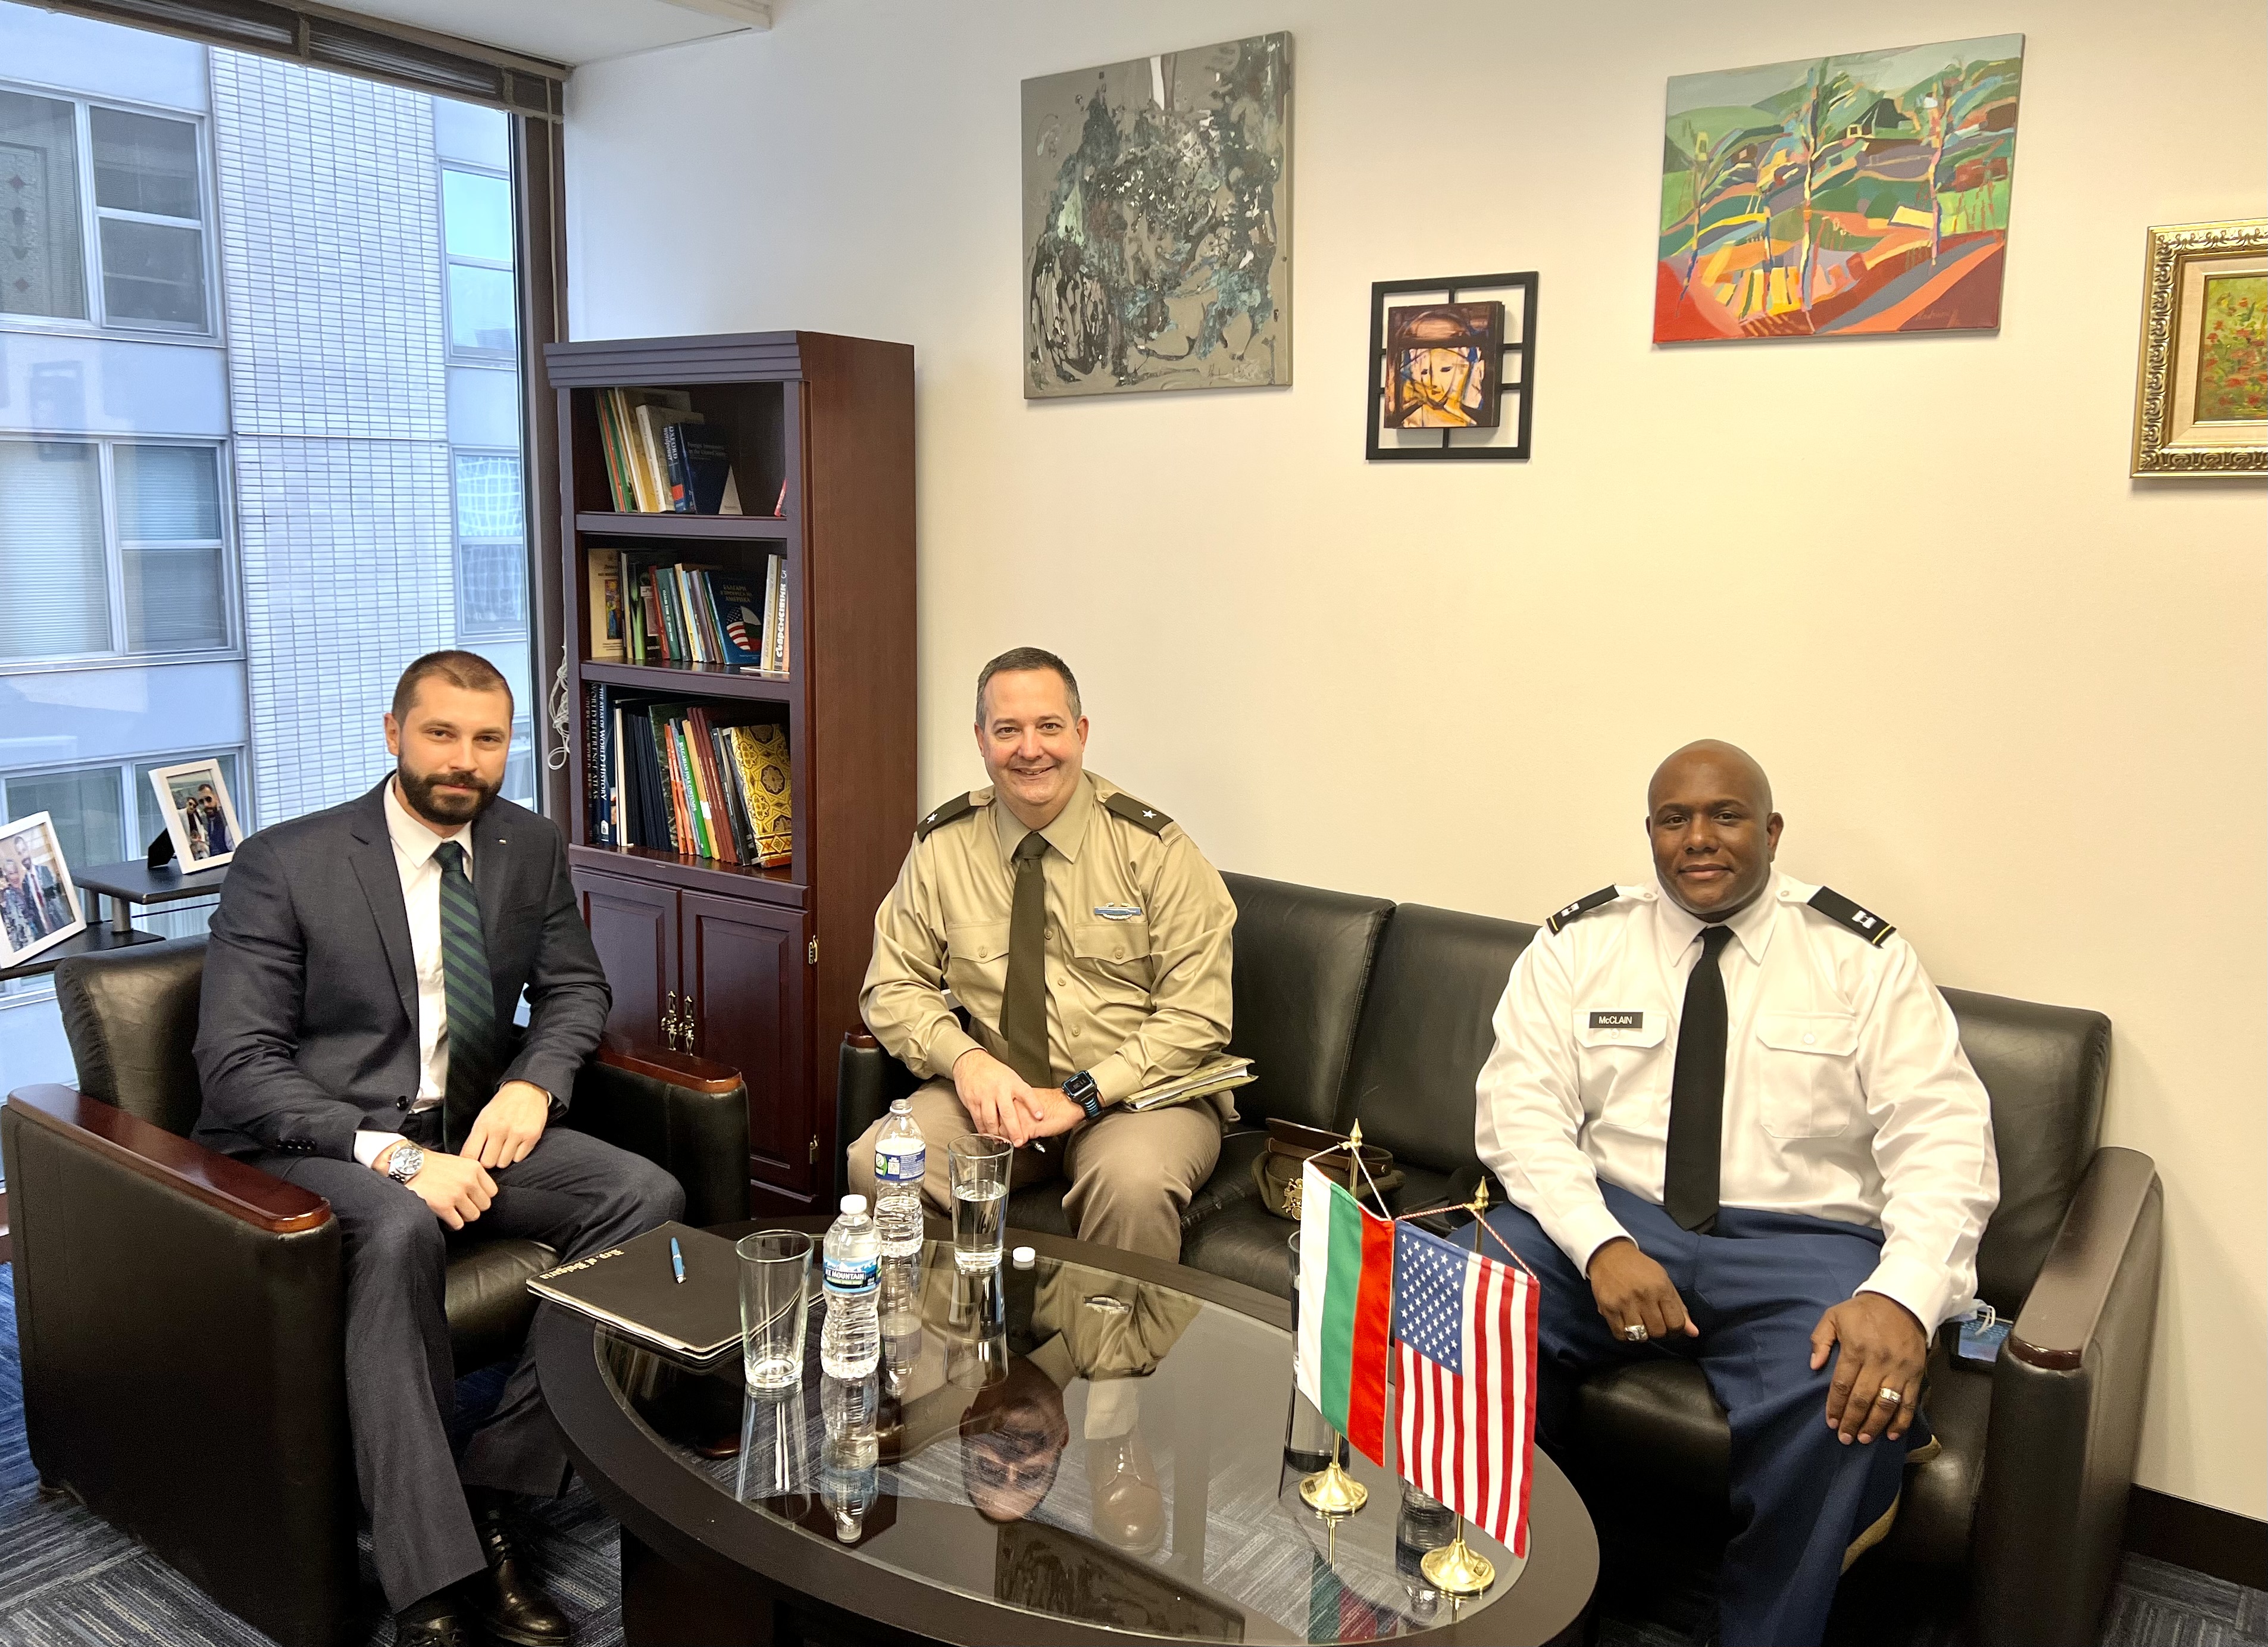 Делегация от Националната гвардия на Илинойс посети Генералното консулство в Чикаго